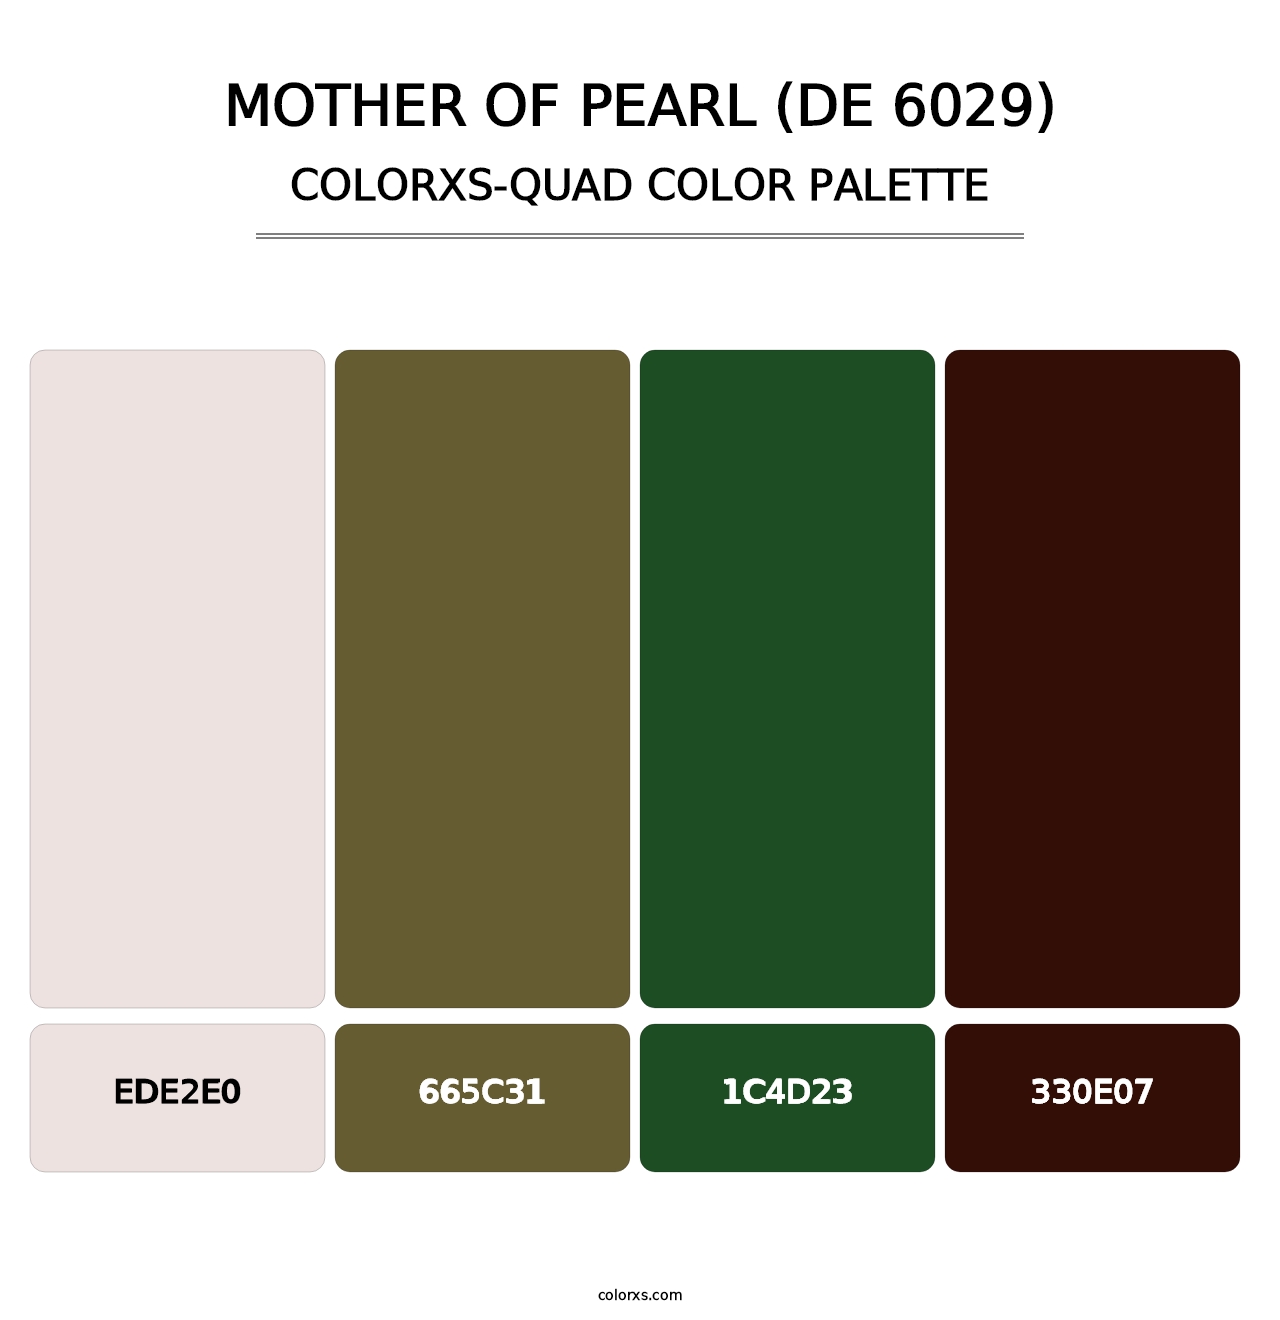 Mother of Pearl (DE 6029) - Colorxs Quad Palette